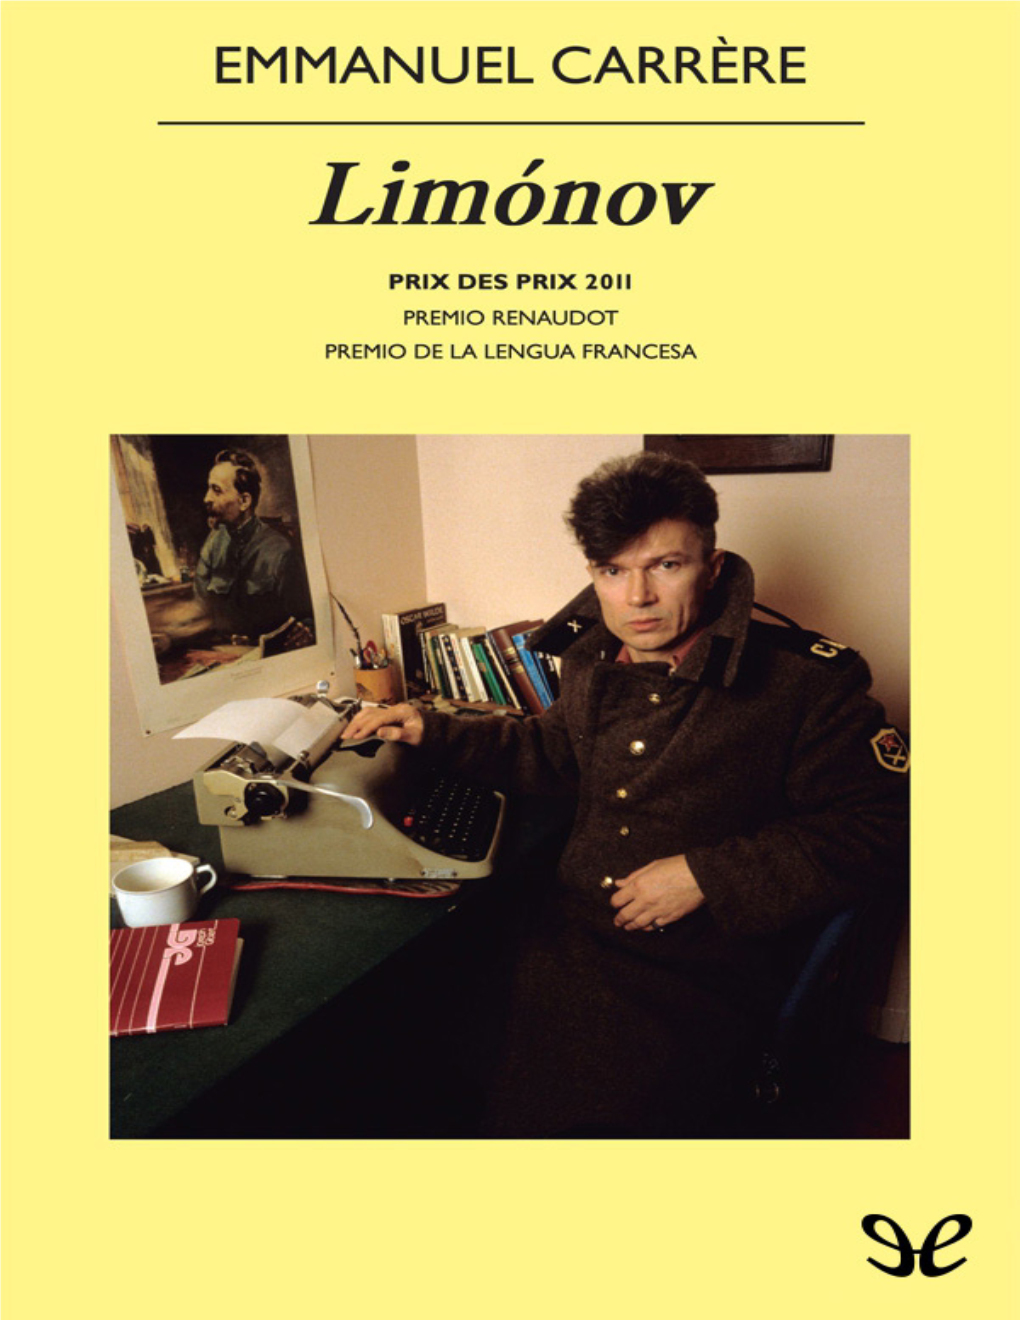 Limonov Emmanuel Carrère, 2011 Traducción: Jaime Zulaika Goicoechea